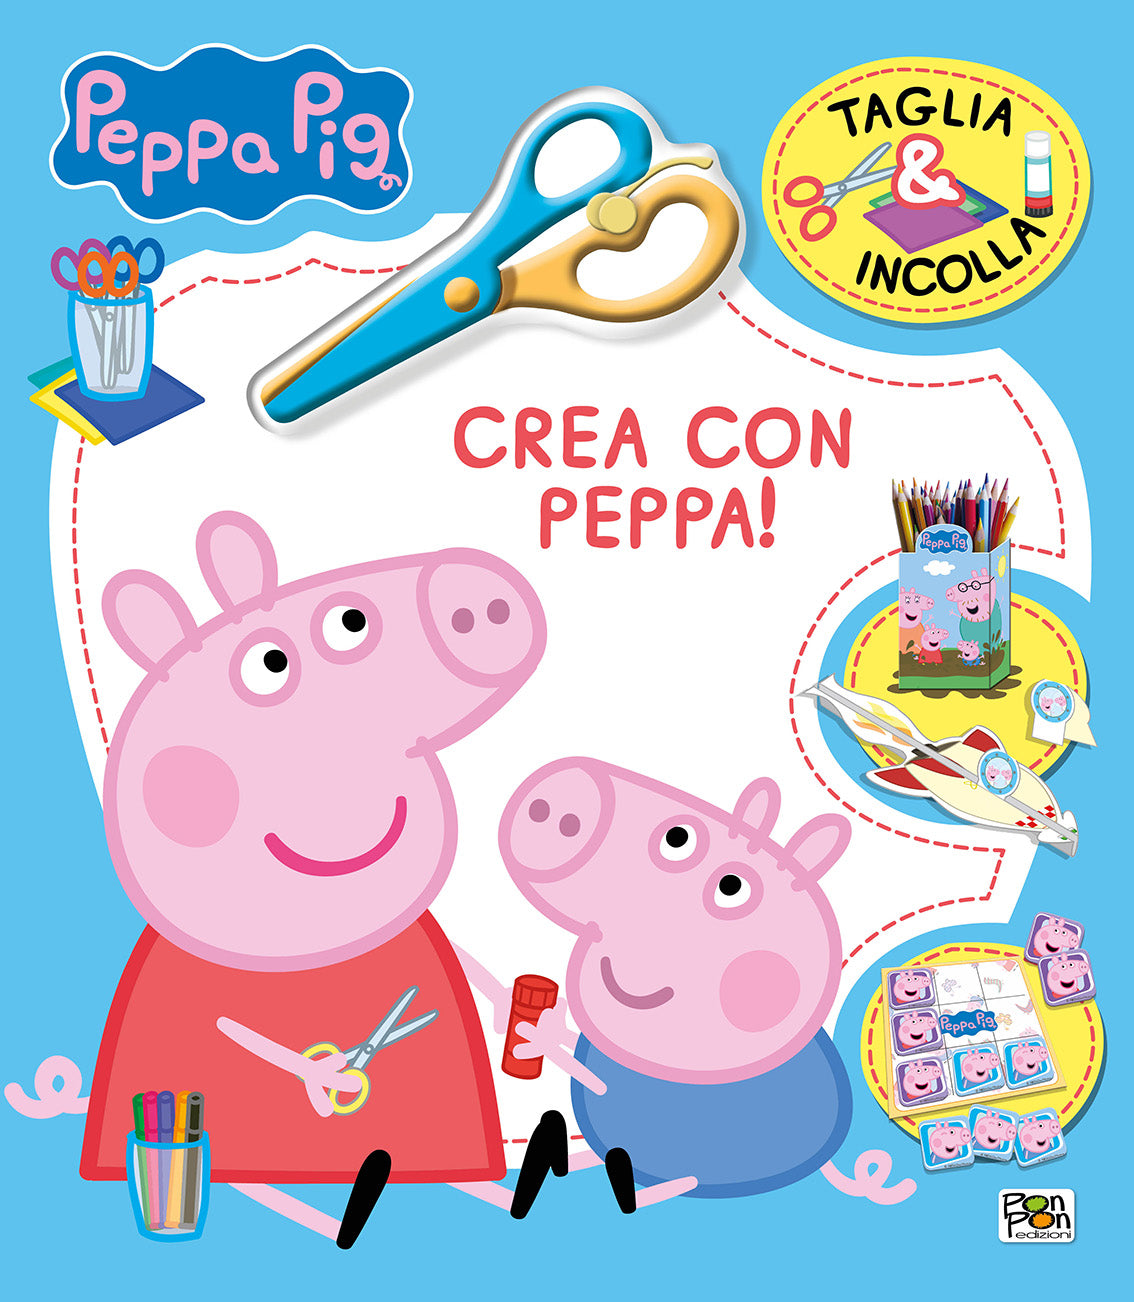 Peppa Pig. Taglia & Incolla. Crea con Peppa, Lisa Capiotto